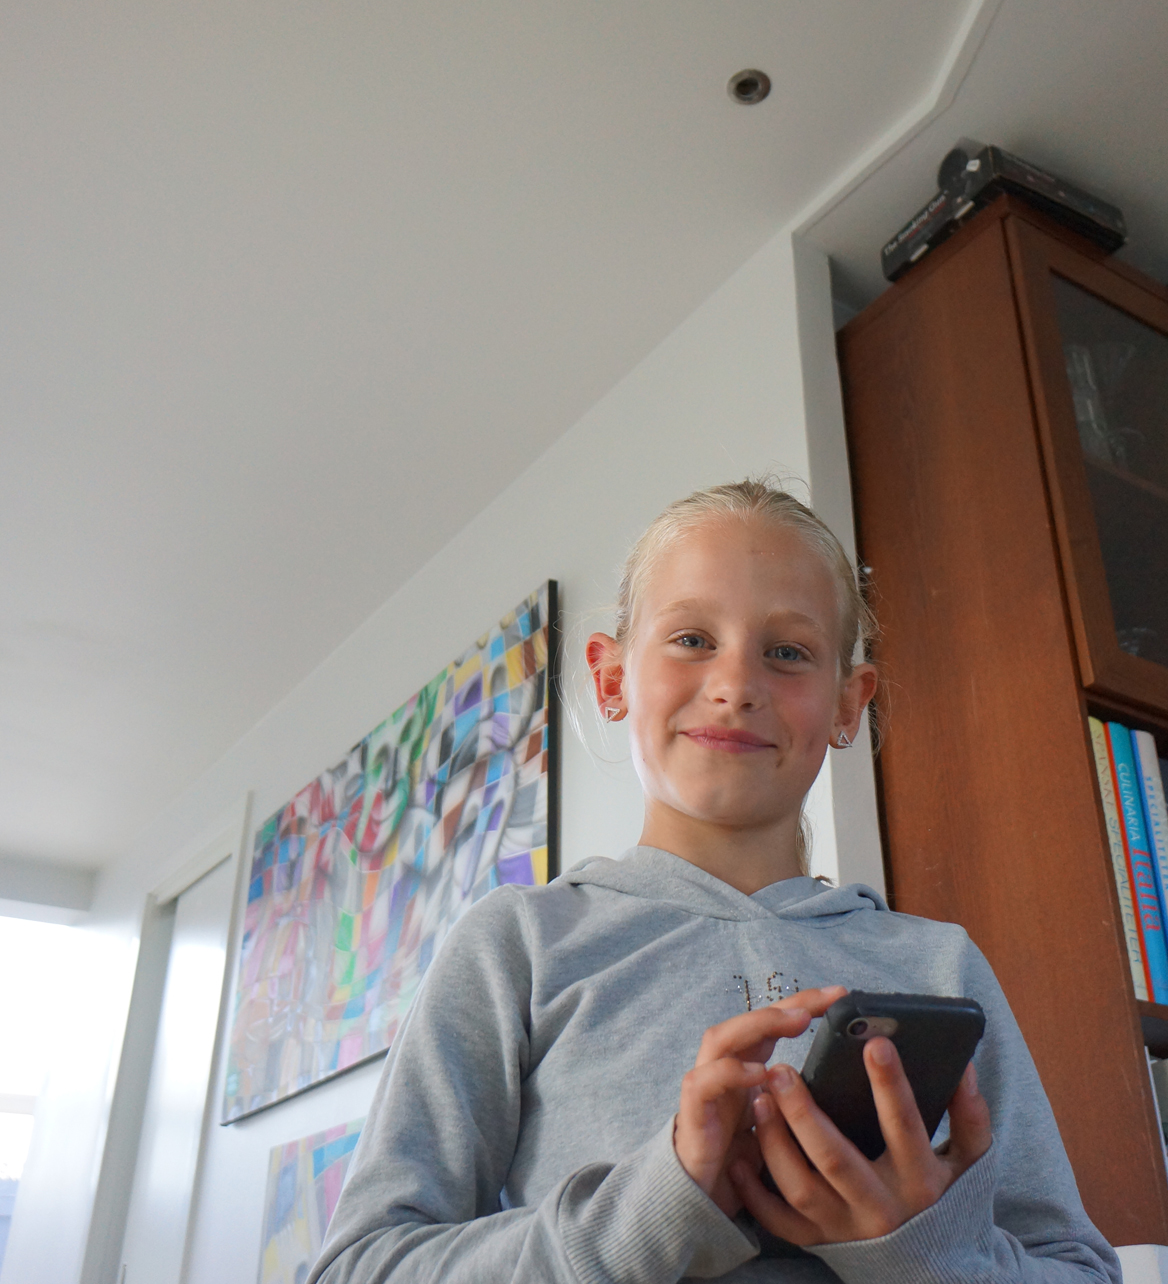 Katrine Sander er 8 år og betjener selv sikkerhedstågen på app’en, når hun kommer hjem fra skole. Tågekanonen er monteret skjult på loftet, så sikkerhedstågen ved indbrud fylder rummet gennem hullet over Katrines hoved. 